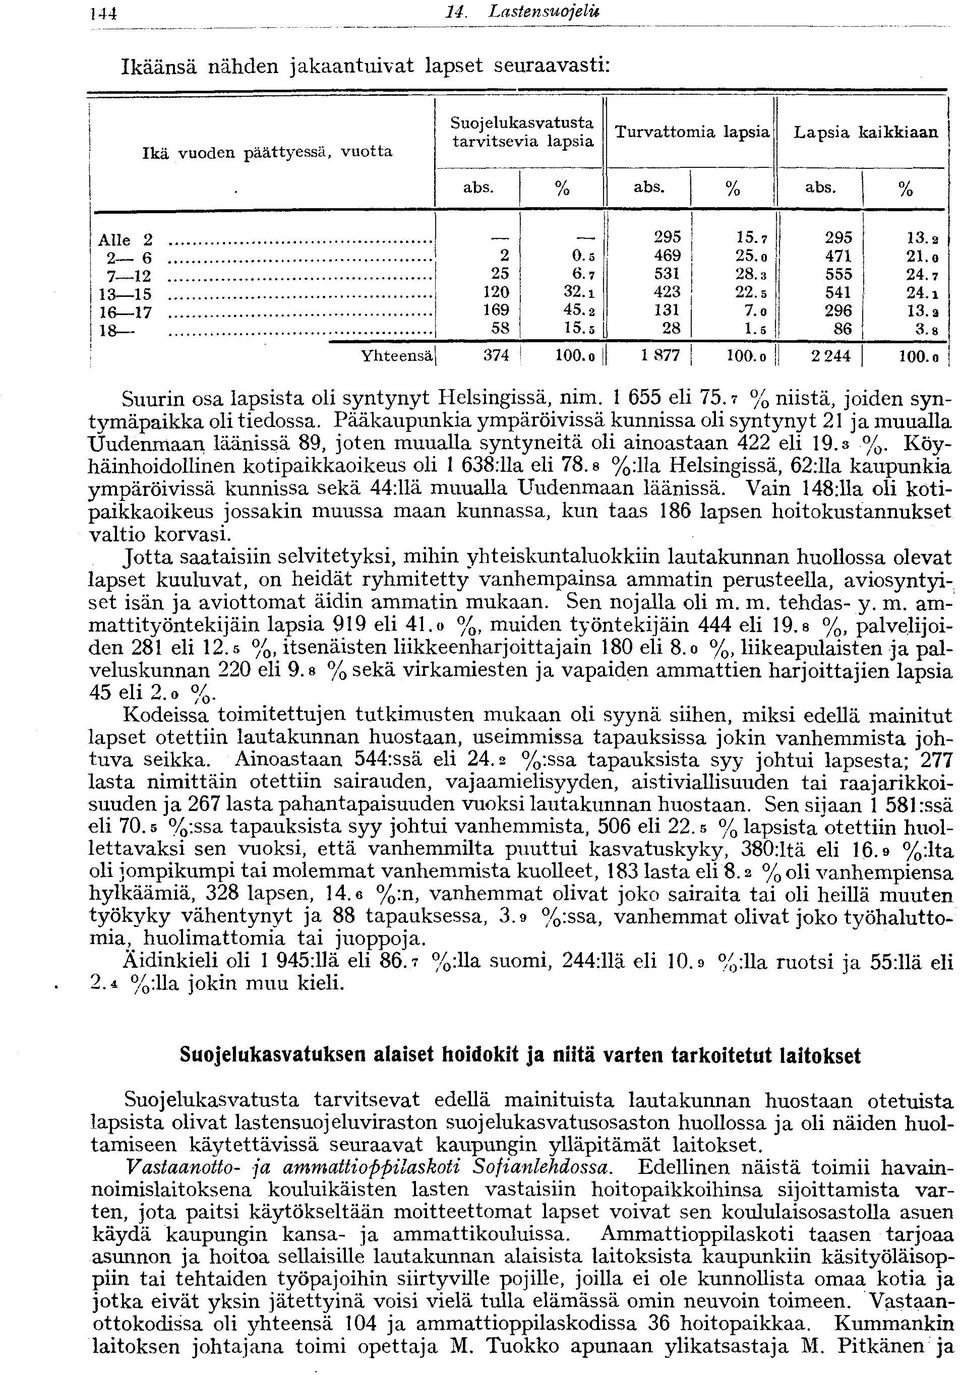 o Suurin osa lapsista oli syntynyt Helsingissä, nim. 655 eli 75.? % niistä, joiden syntymäpaikka oli tiedossa.